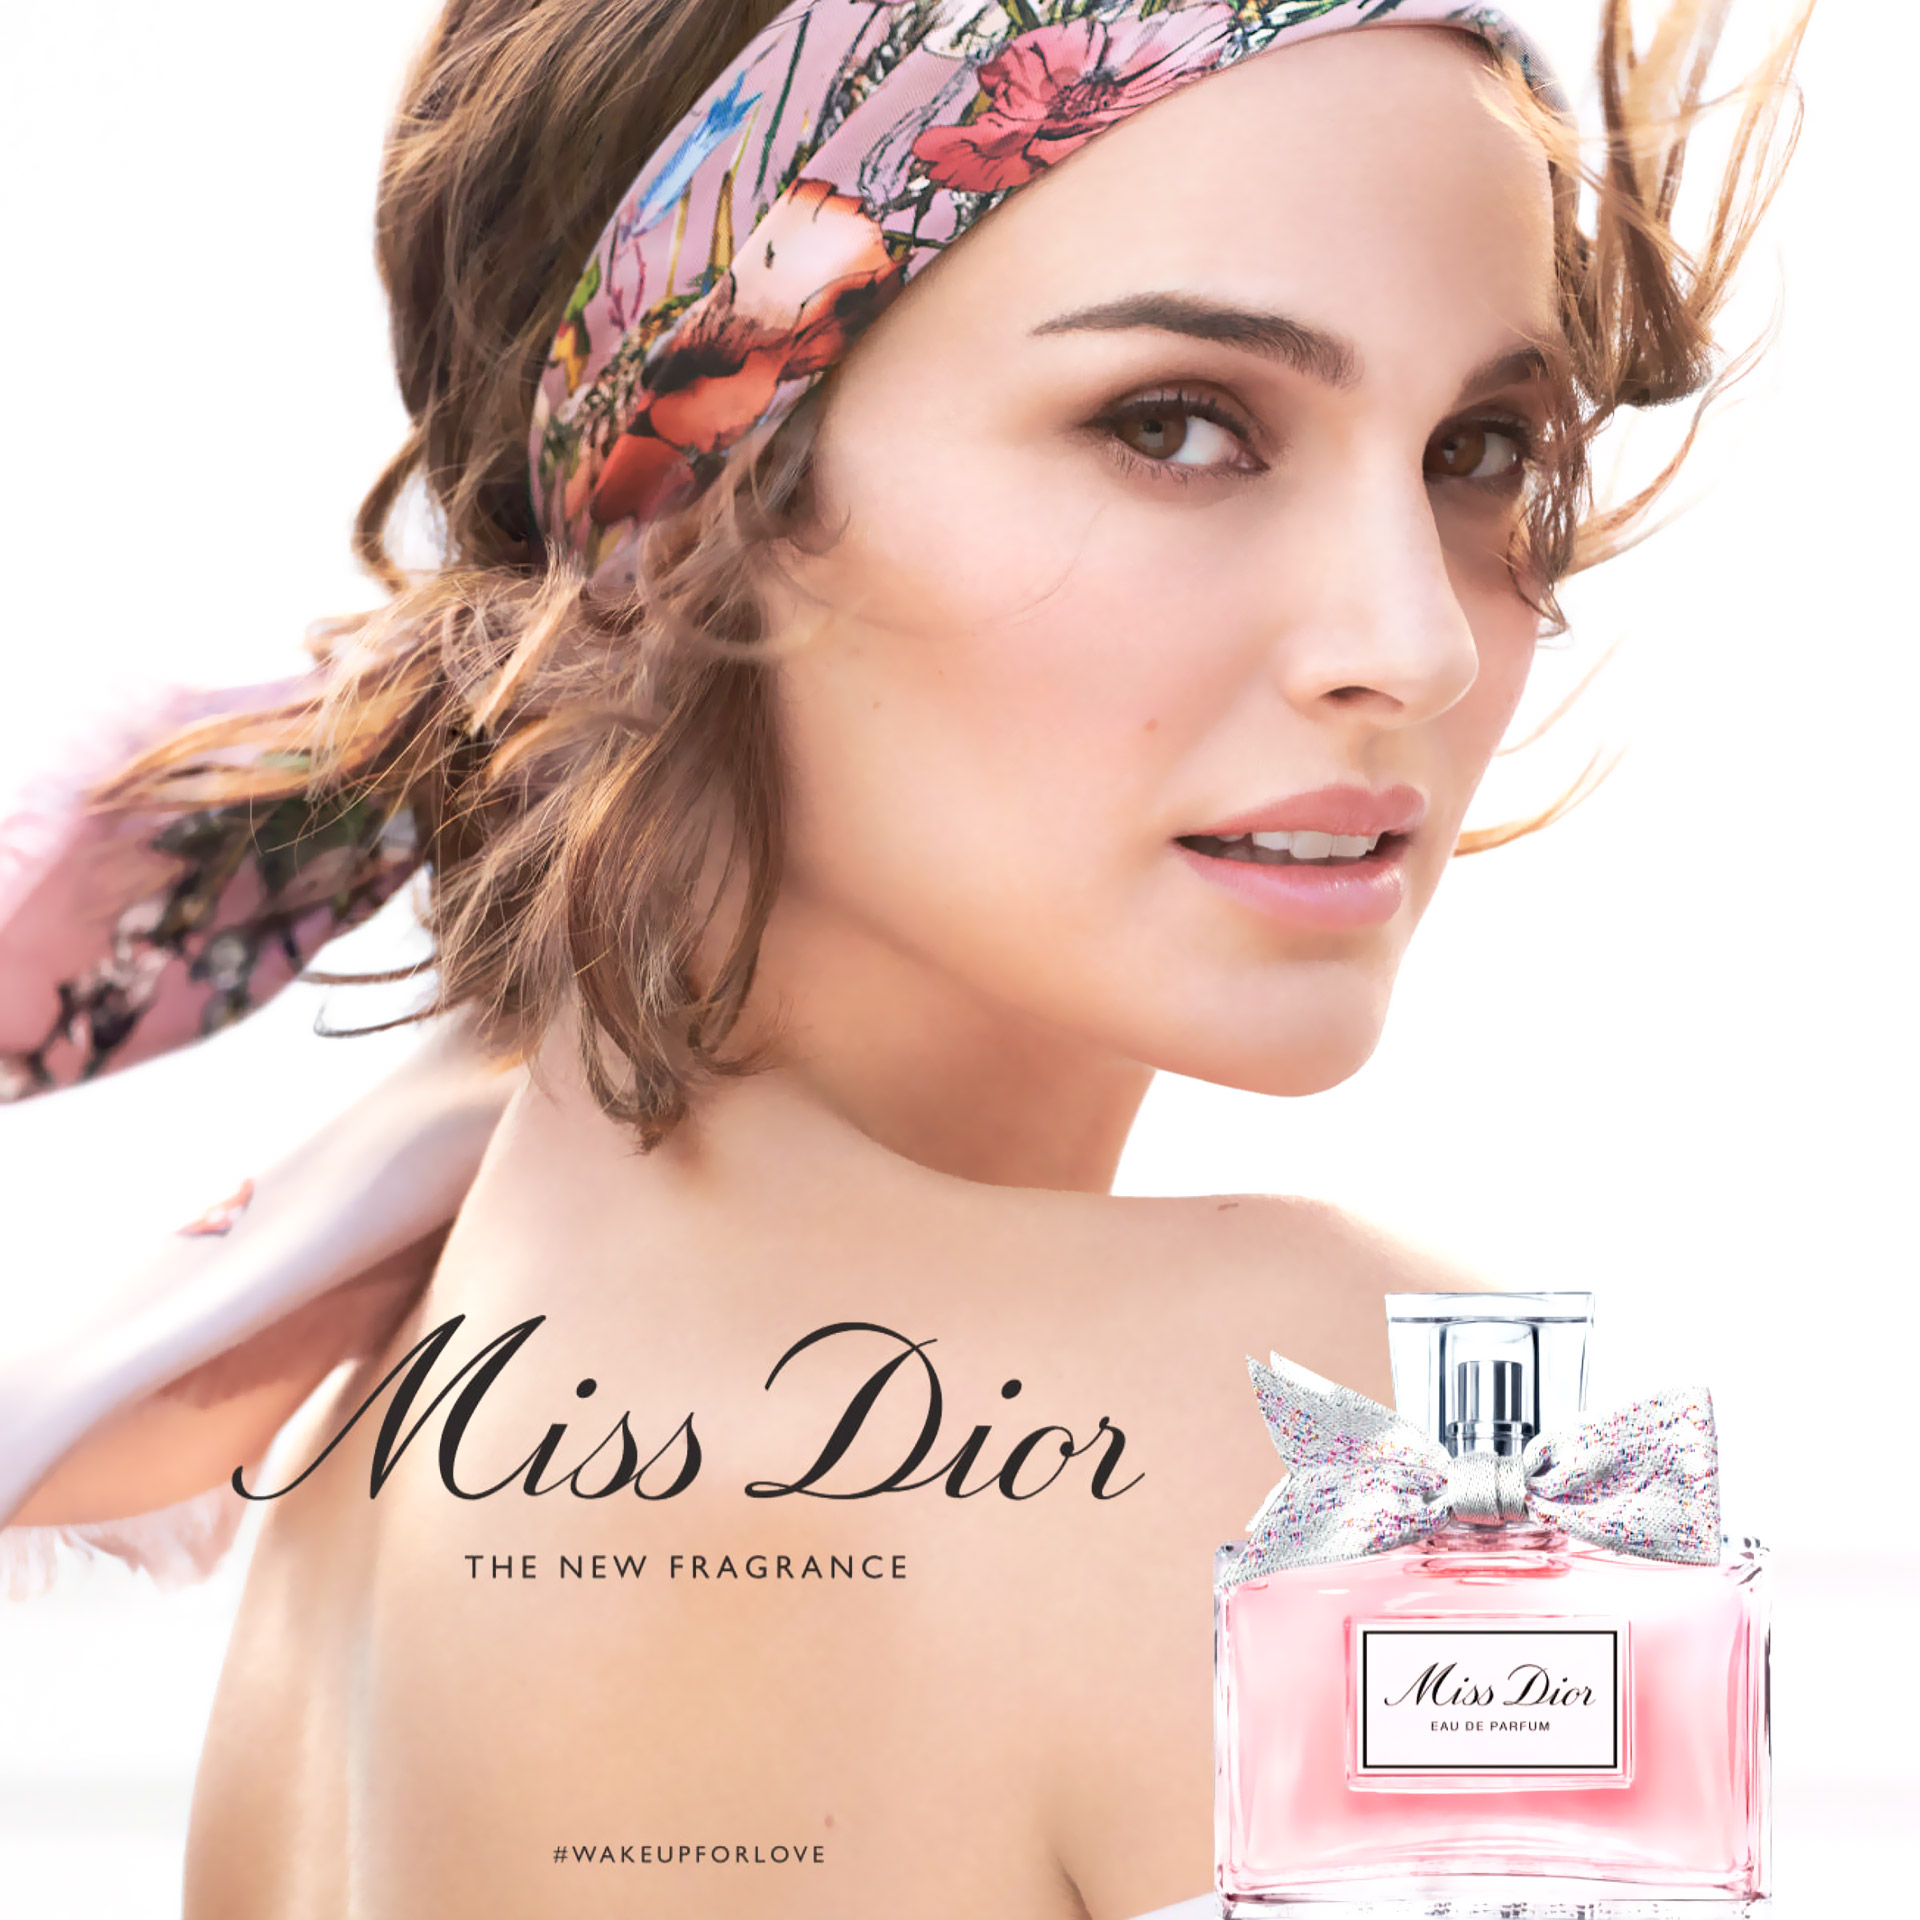 Musique pub Miss Dior 2021